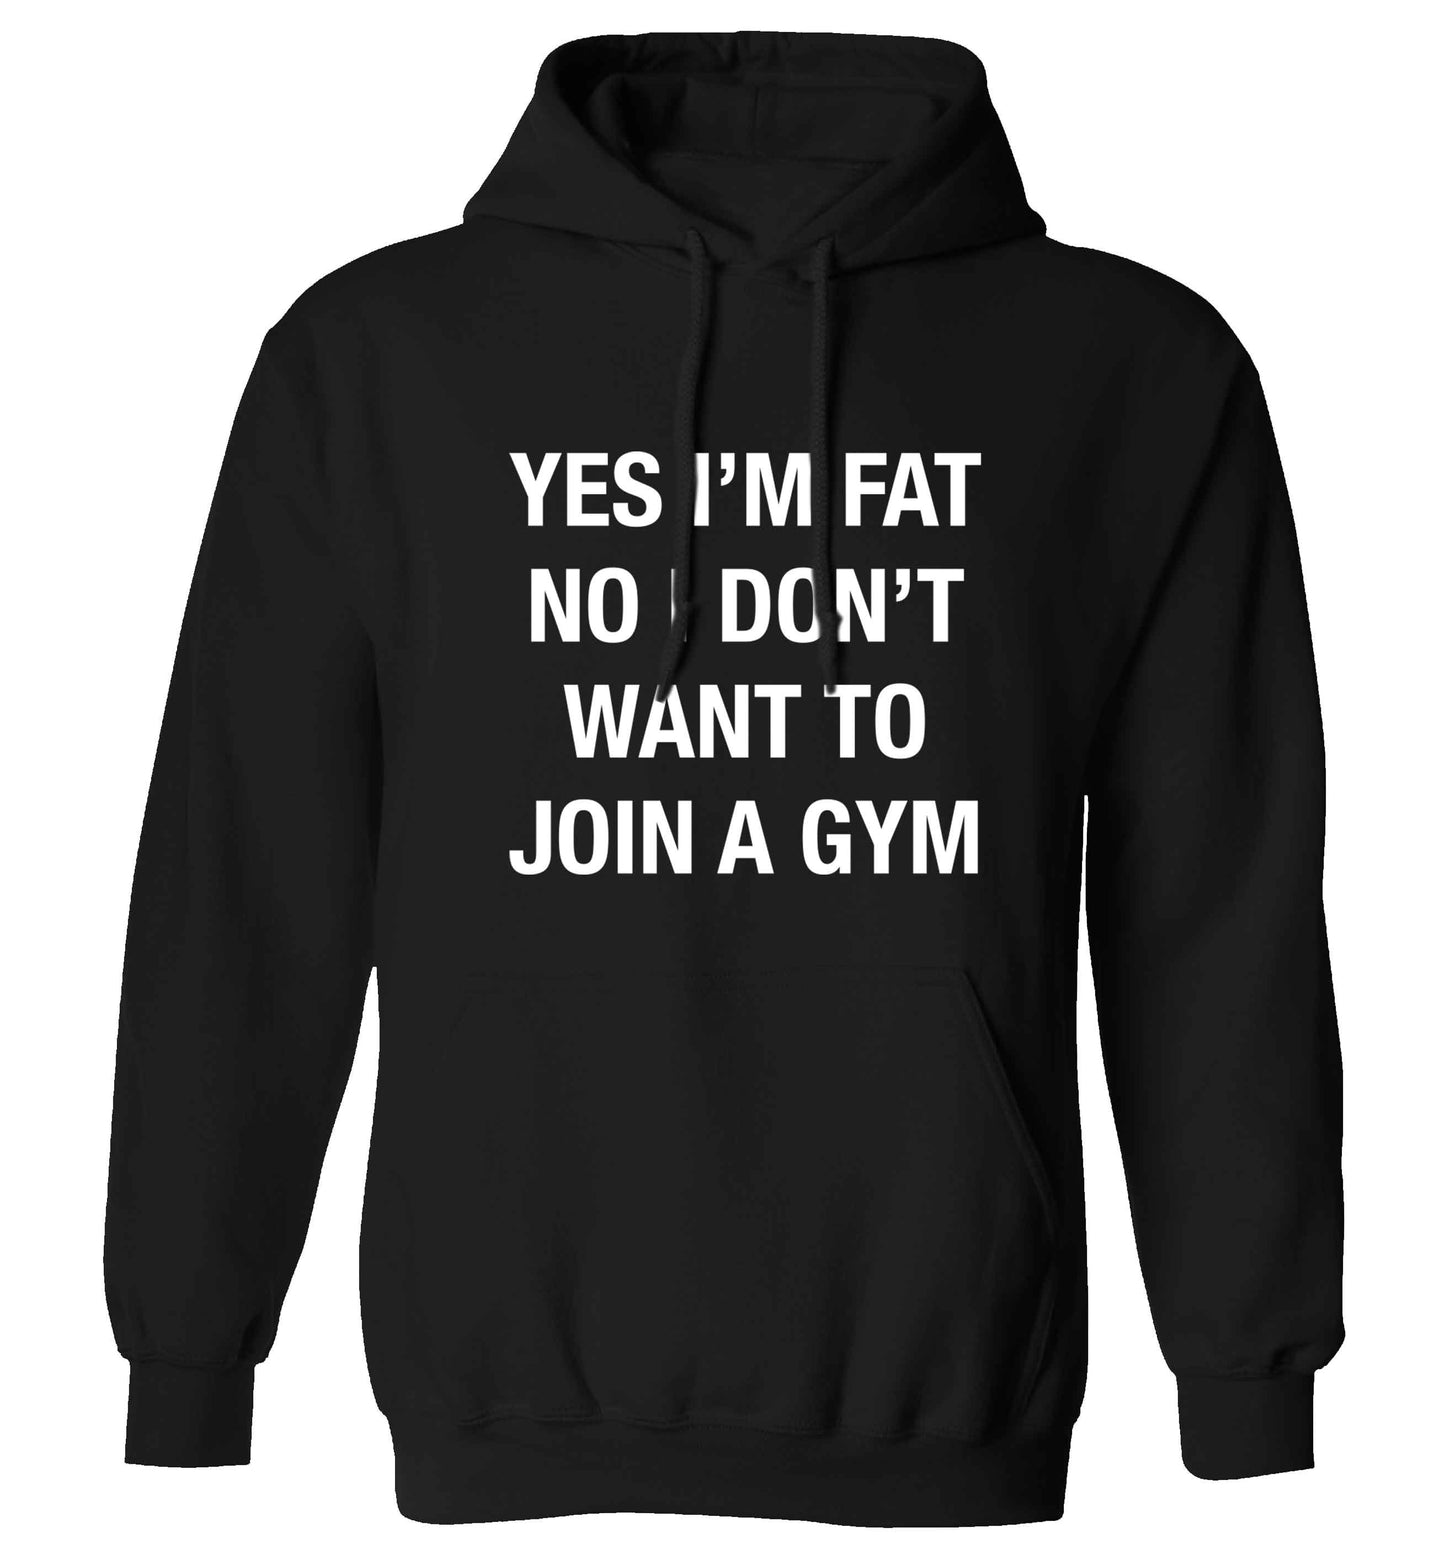 Yes I'm fat, no I don't want to go to the gym adults unisex black hoodie 2XL